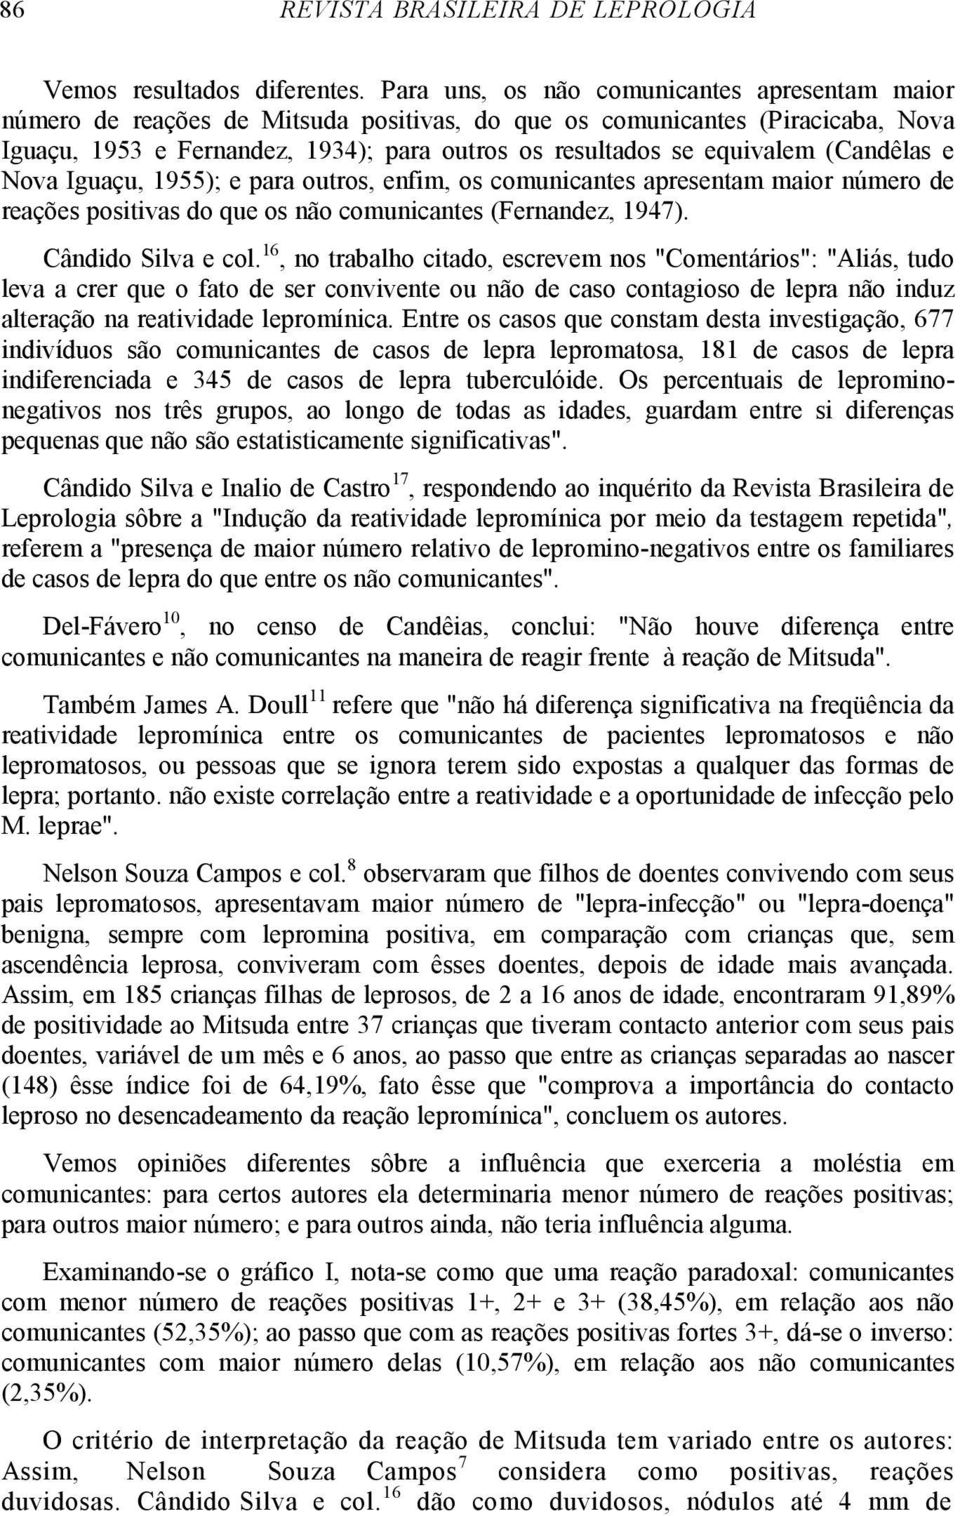 (Candêlas e Nova Iguaçu, 1955); e para outros, enfim, os comunicantes apresentam maior número de reações positivas do que os não comunicantes (Fernandez, 1947). Cândido Silva e col.